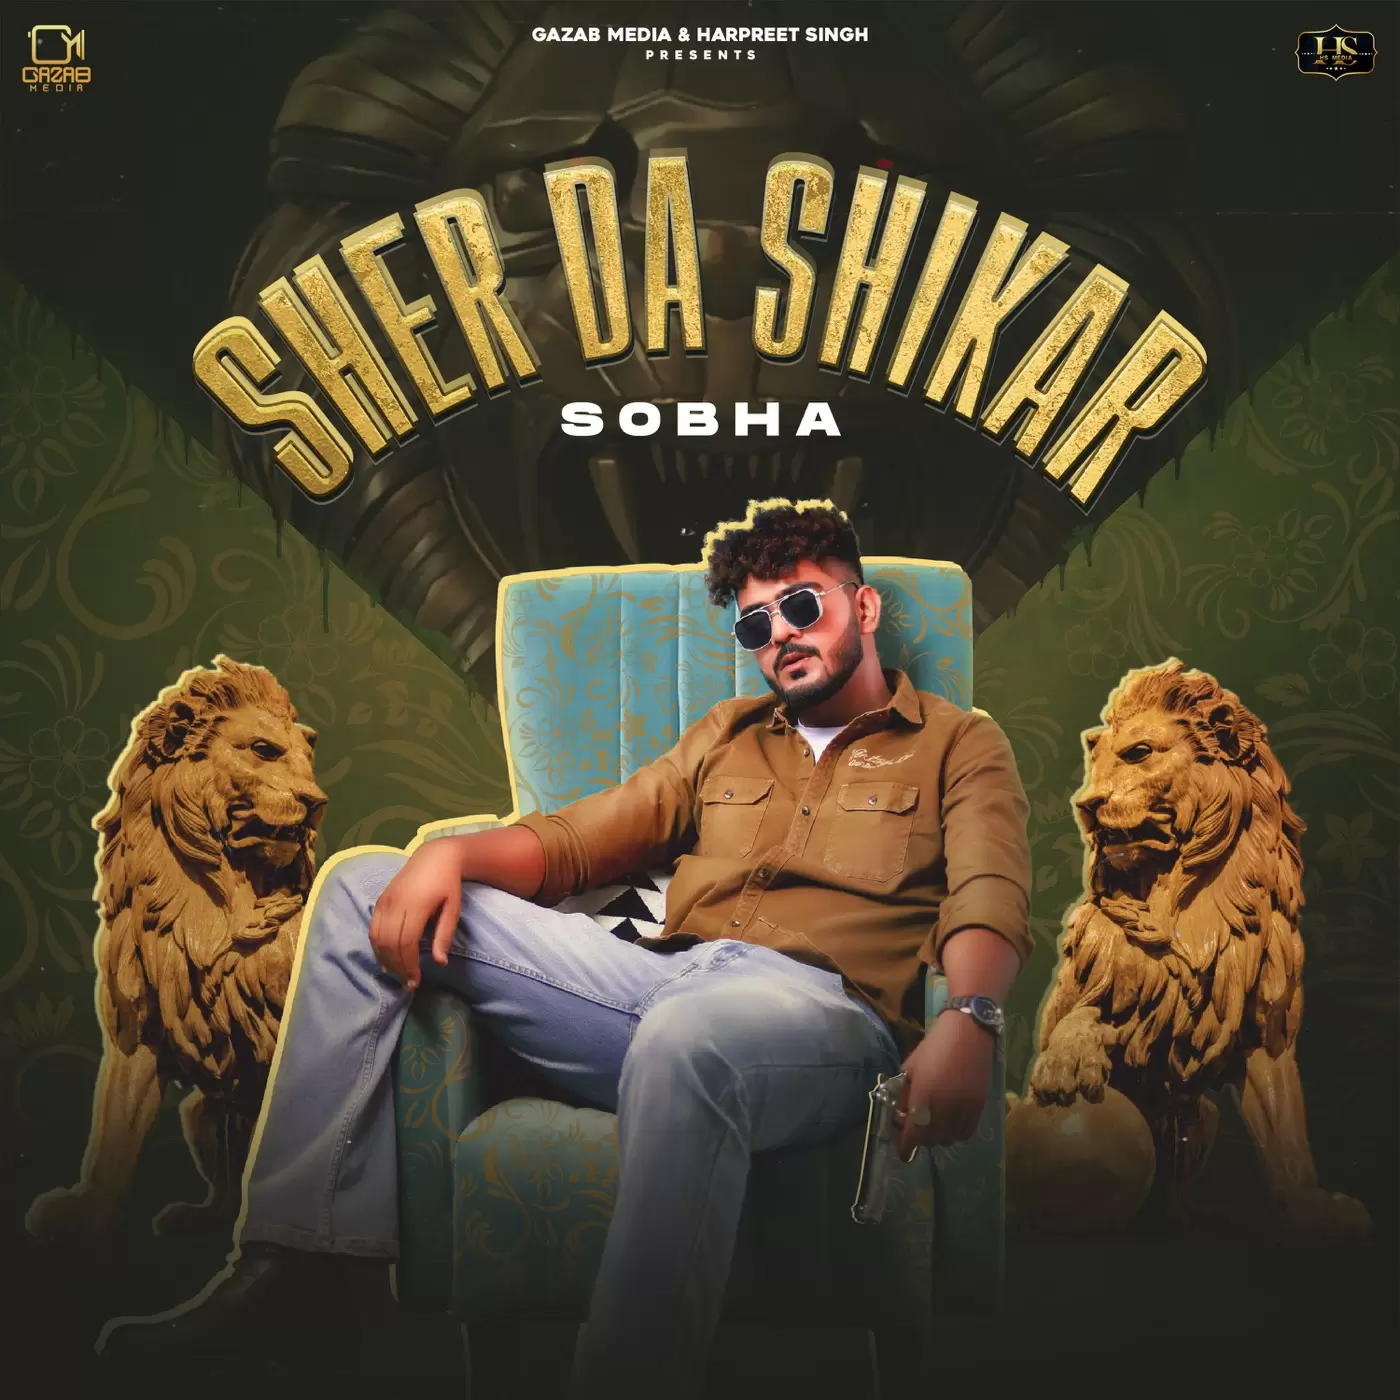 Sher Da Shikar Sobha Mp3 Download Song - Mr-Punjab